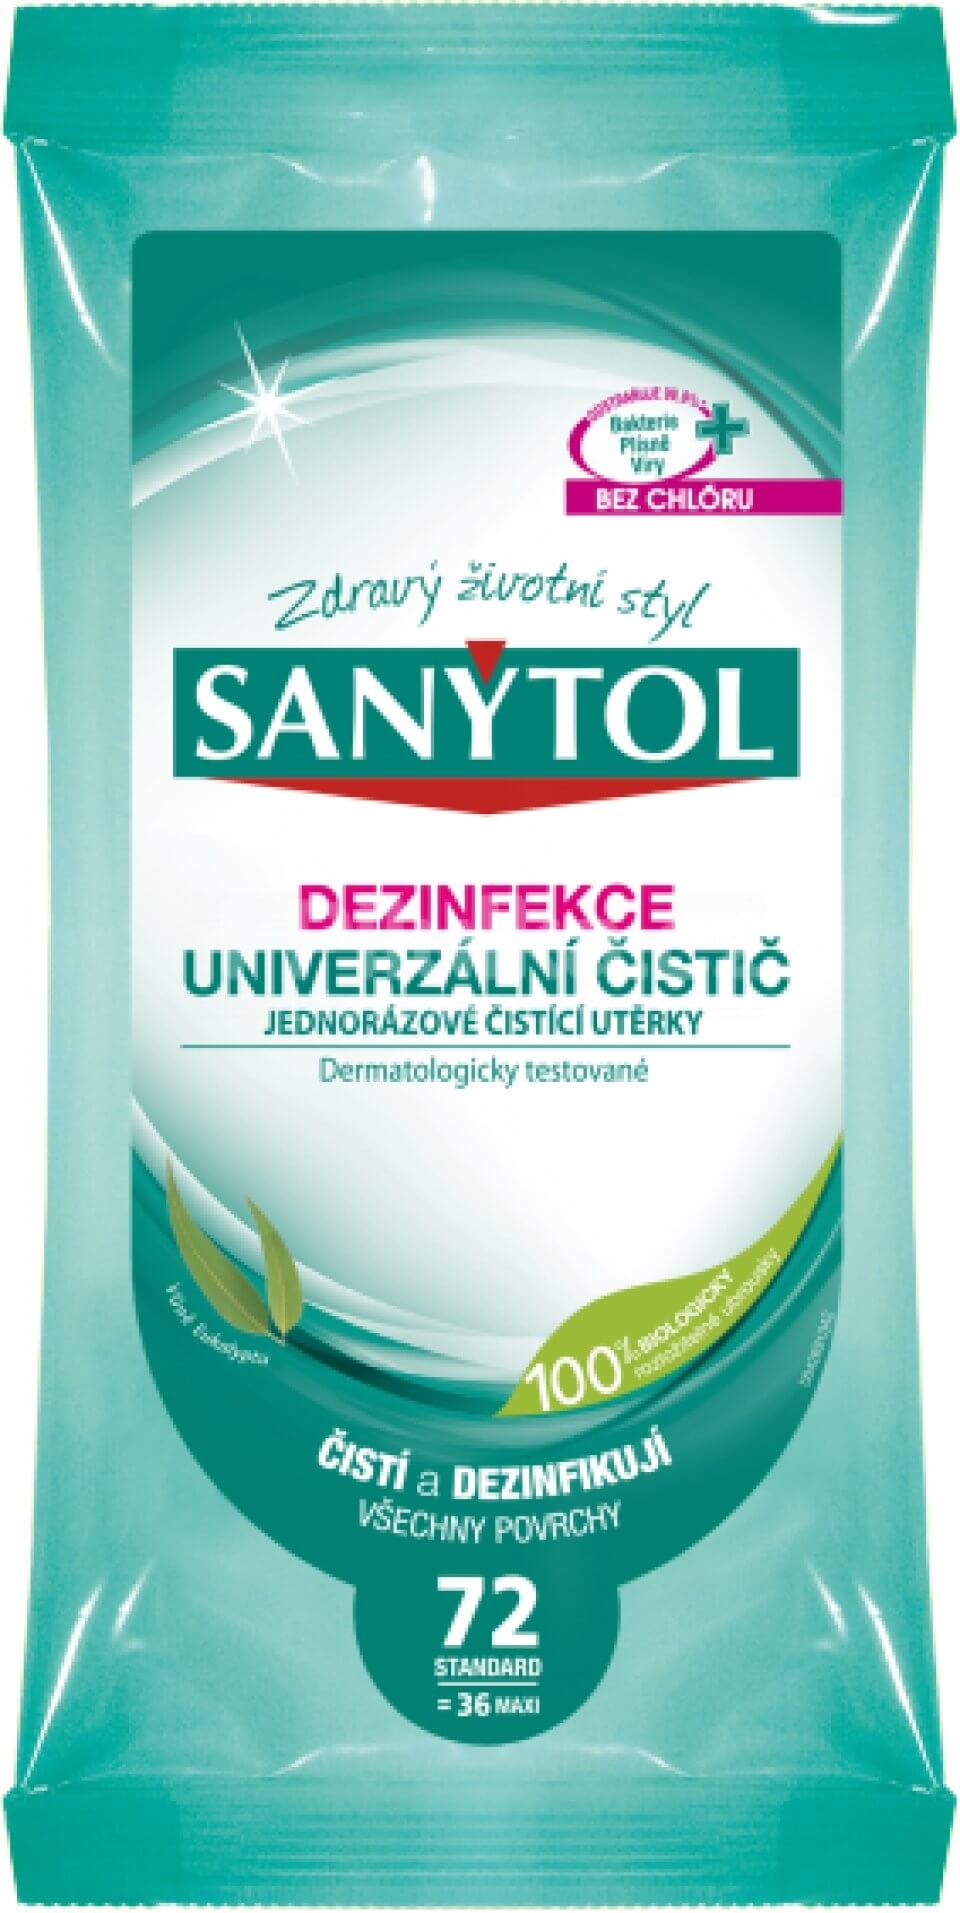 Sanytol Dezinfekce univerzální čistič jednorázové čisticí utěrky 36 ks